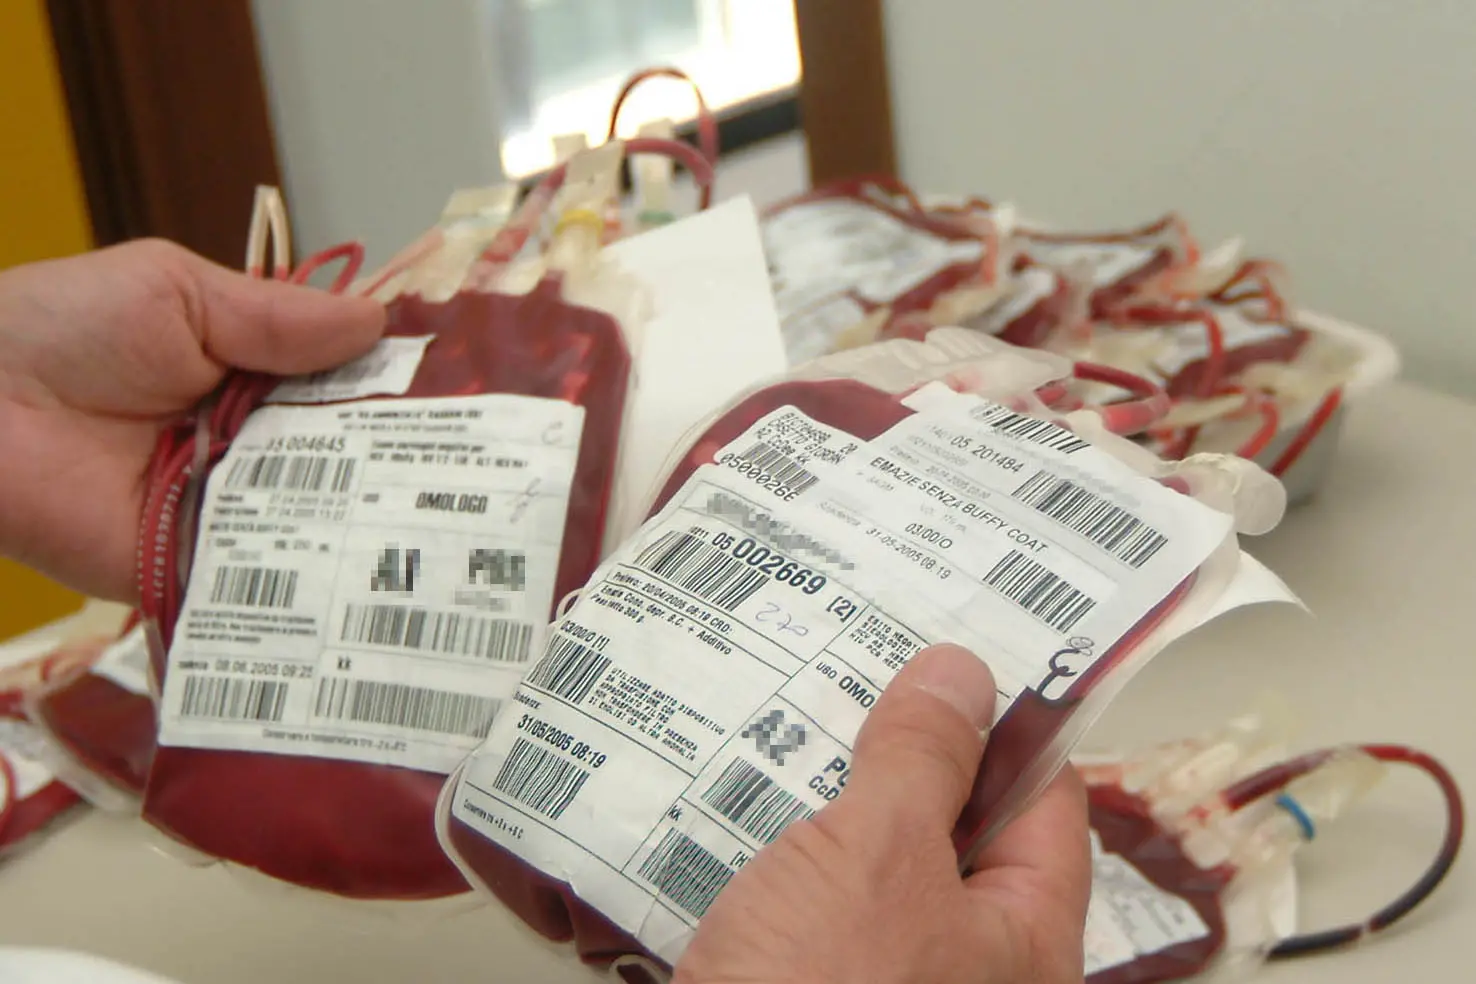 Sacche per la trasfusione di sangue  (foto L'Unione Sarda)